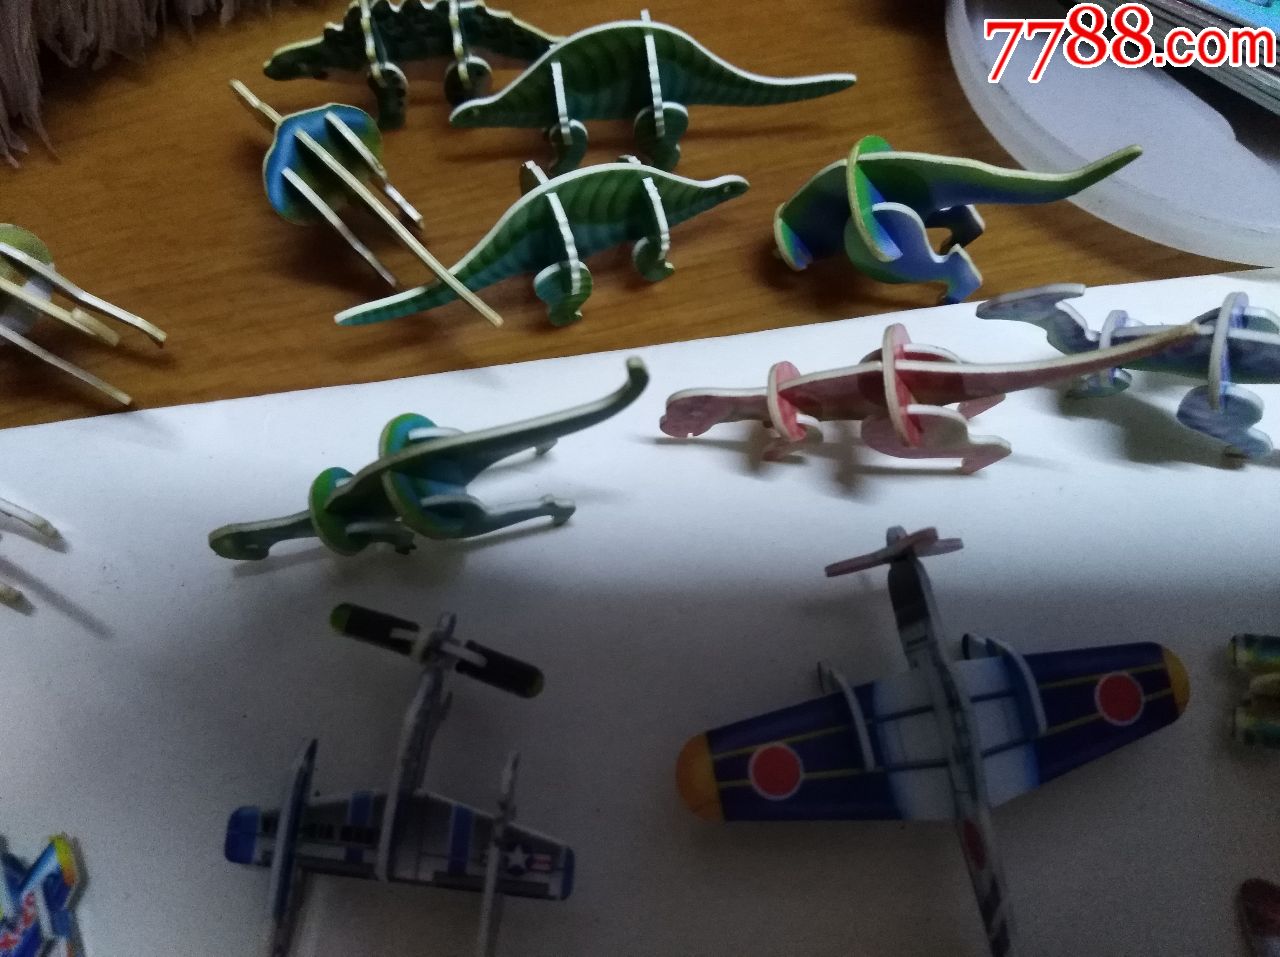 小灵龙玩具卡叠成的玩具恐龙,飞机,小车,变形金刚等一堆,还有7张卡架